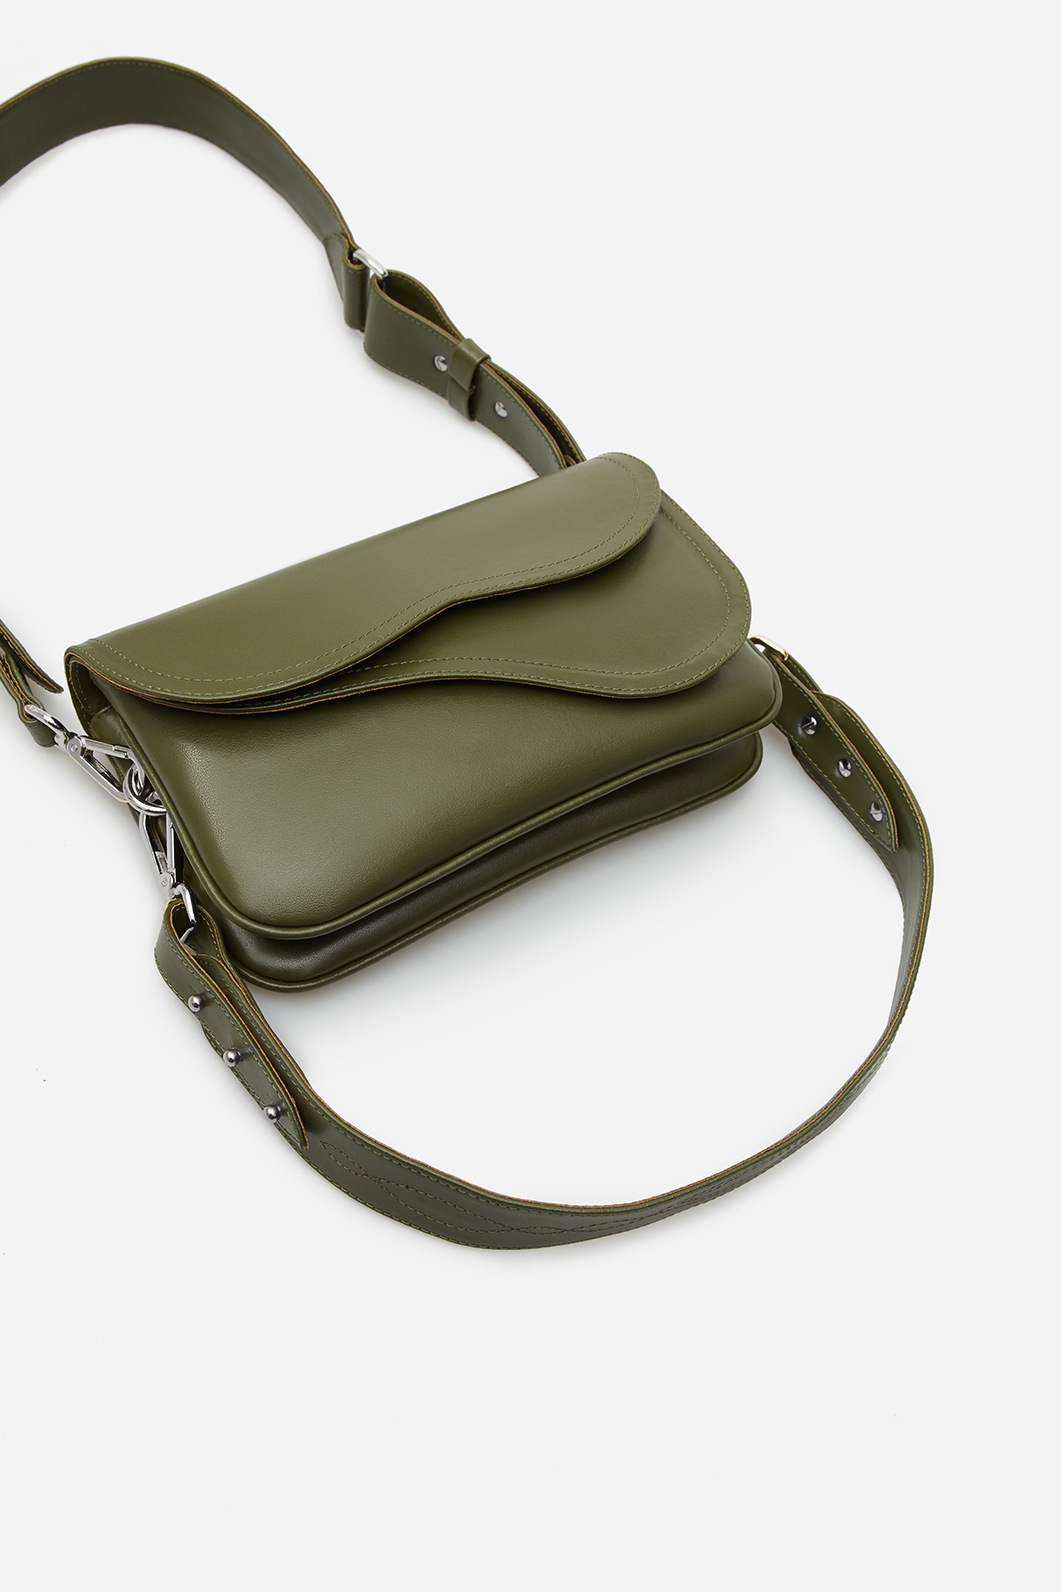 Кросбоді Saddle bag 2 
кольору хакі з шкіри /срібло/